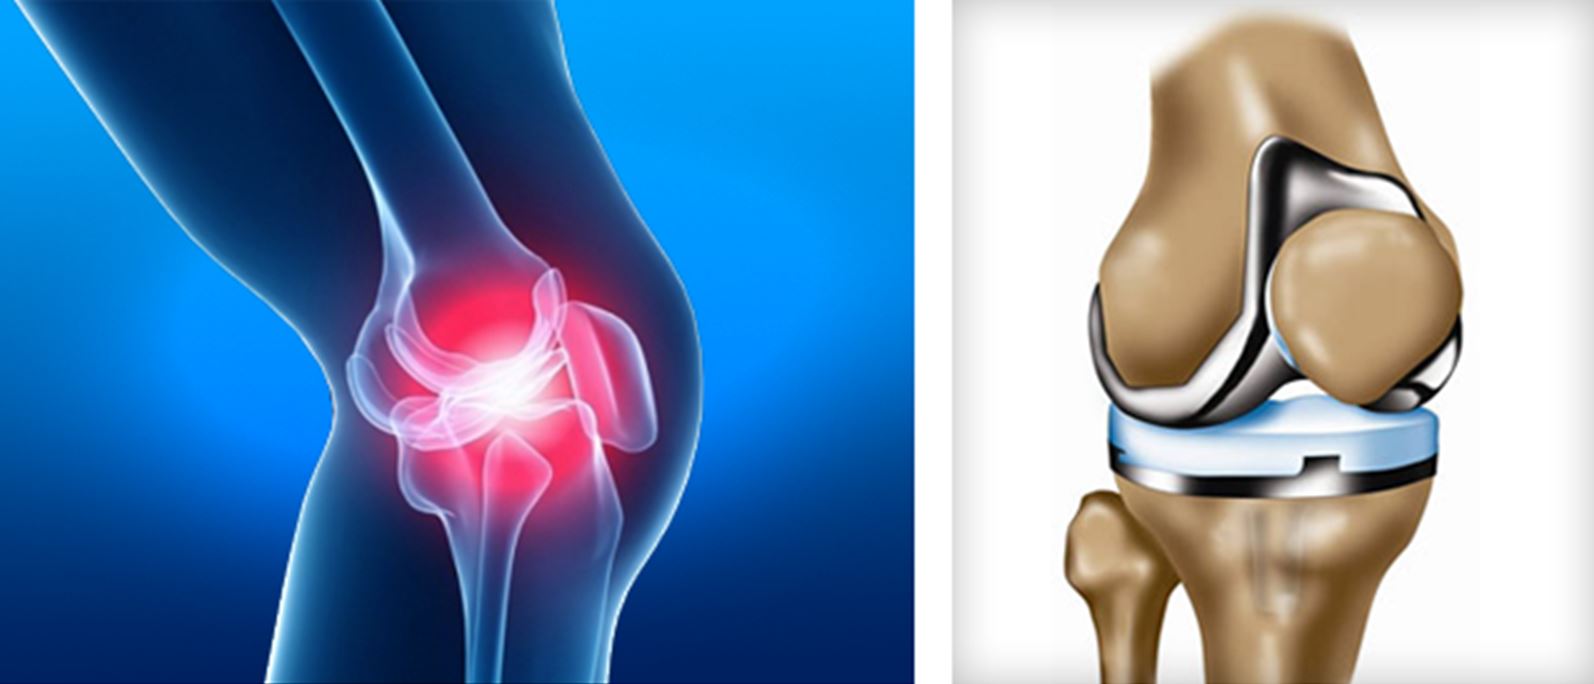 Восстановление сустава без операции. Эндопротез коленного сустава. ТЭП эндопротезирование коленного сустава. Остеоартроз травматология эндопротезирование.